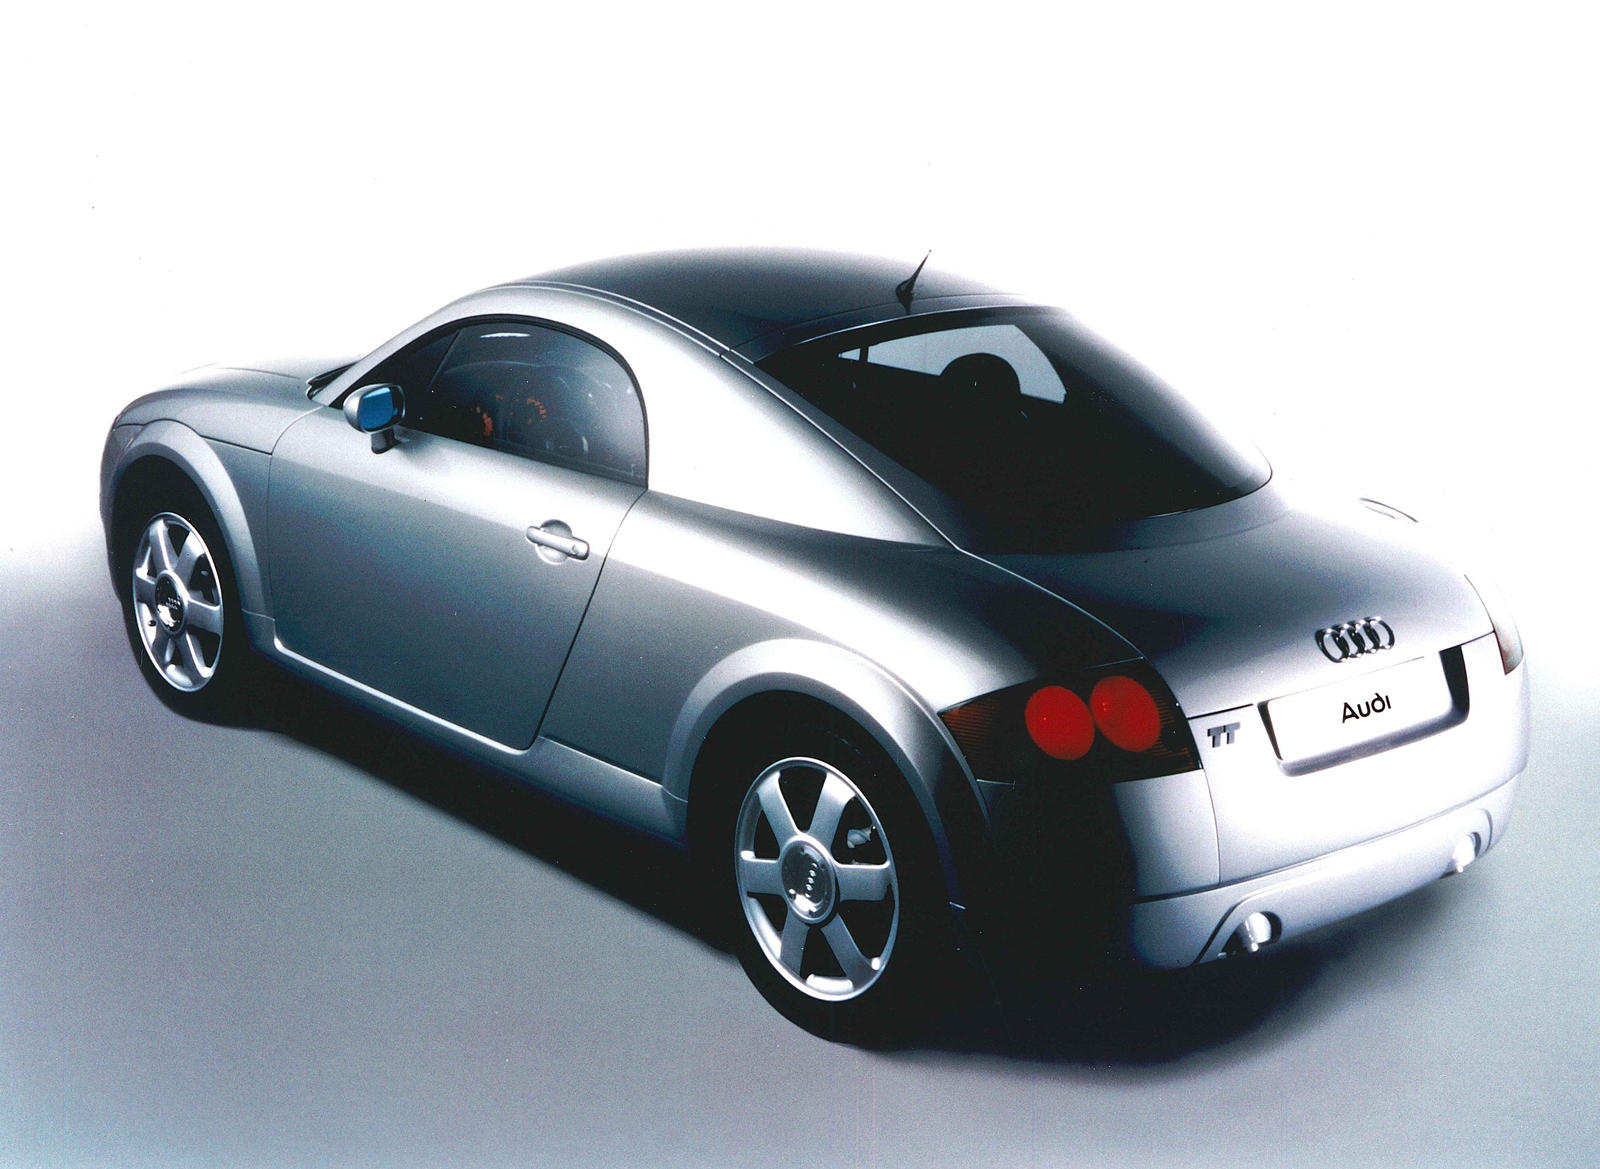 End of an era: Original 1998 Audi TT vs current Mk3